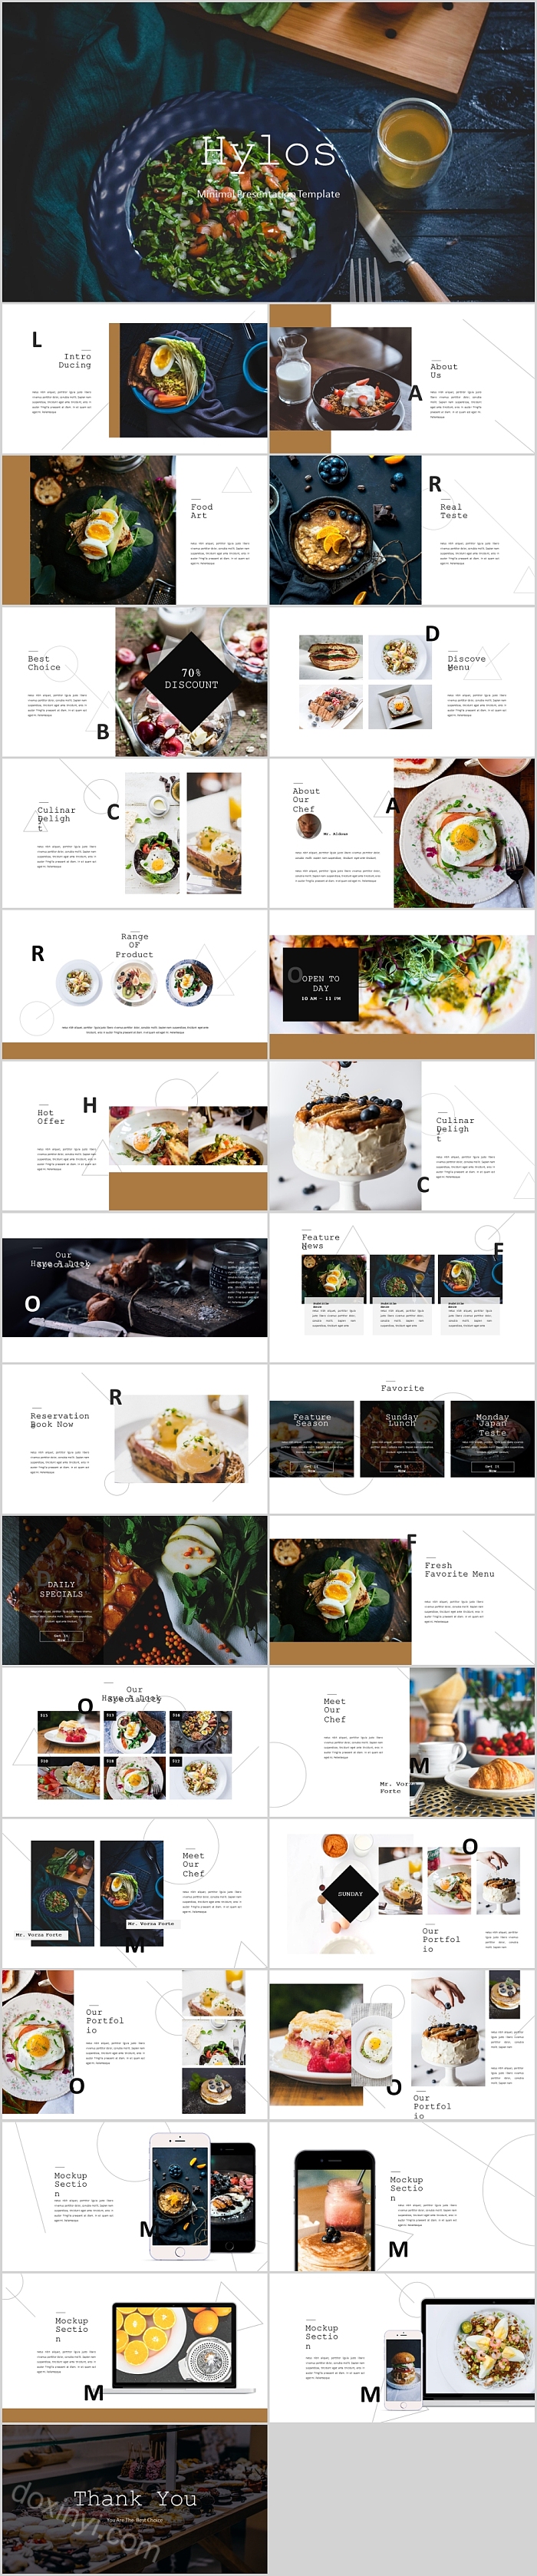 精品韩国美食食物比萨西高档餐饮餐厅介绍动态创意清新PPT模板